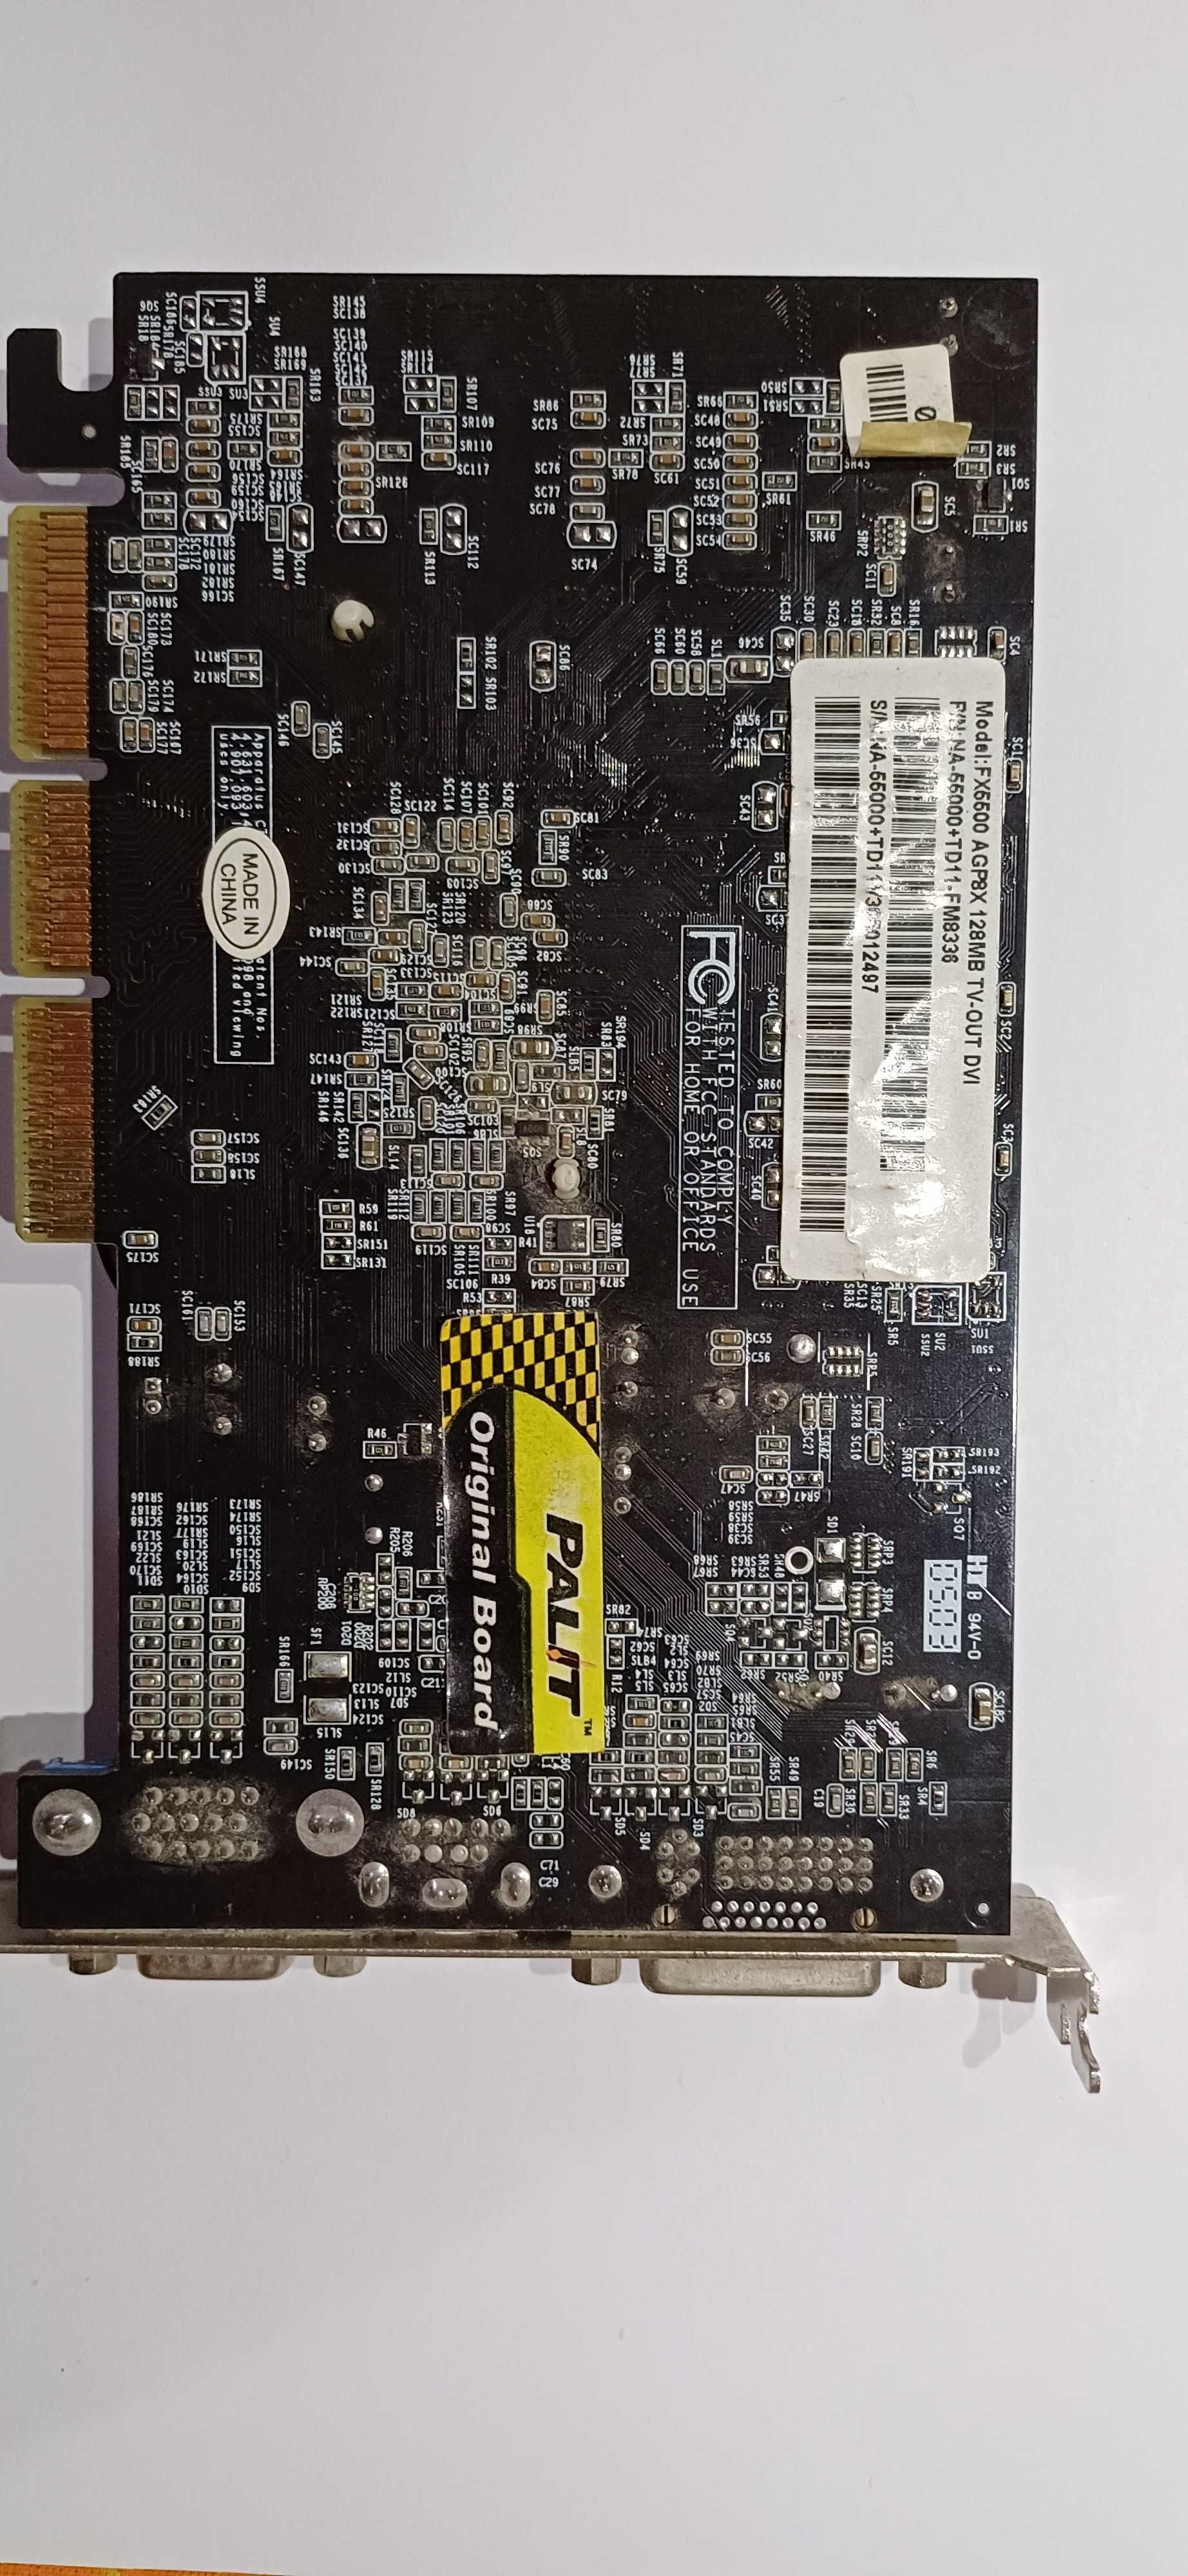 NVIDIA GeForce FX 5500 GPU